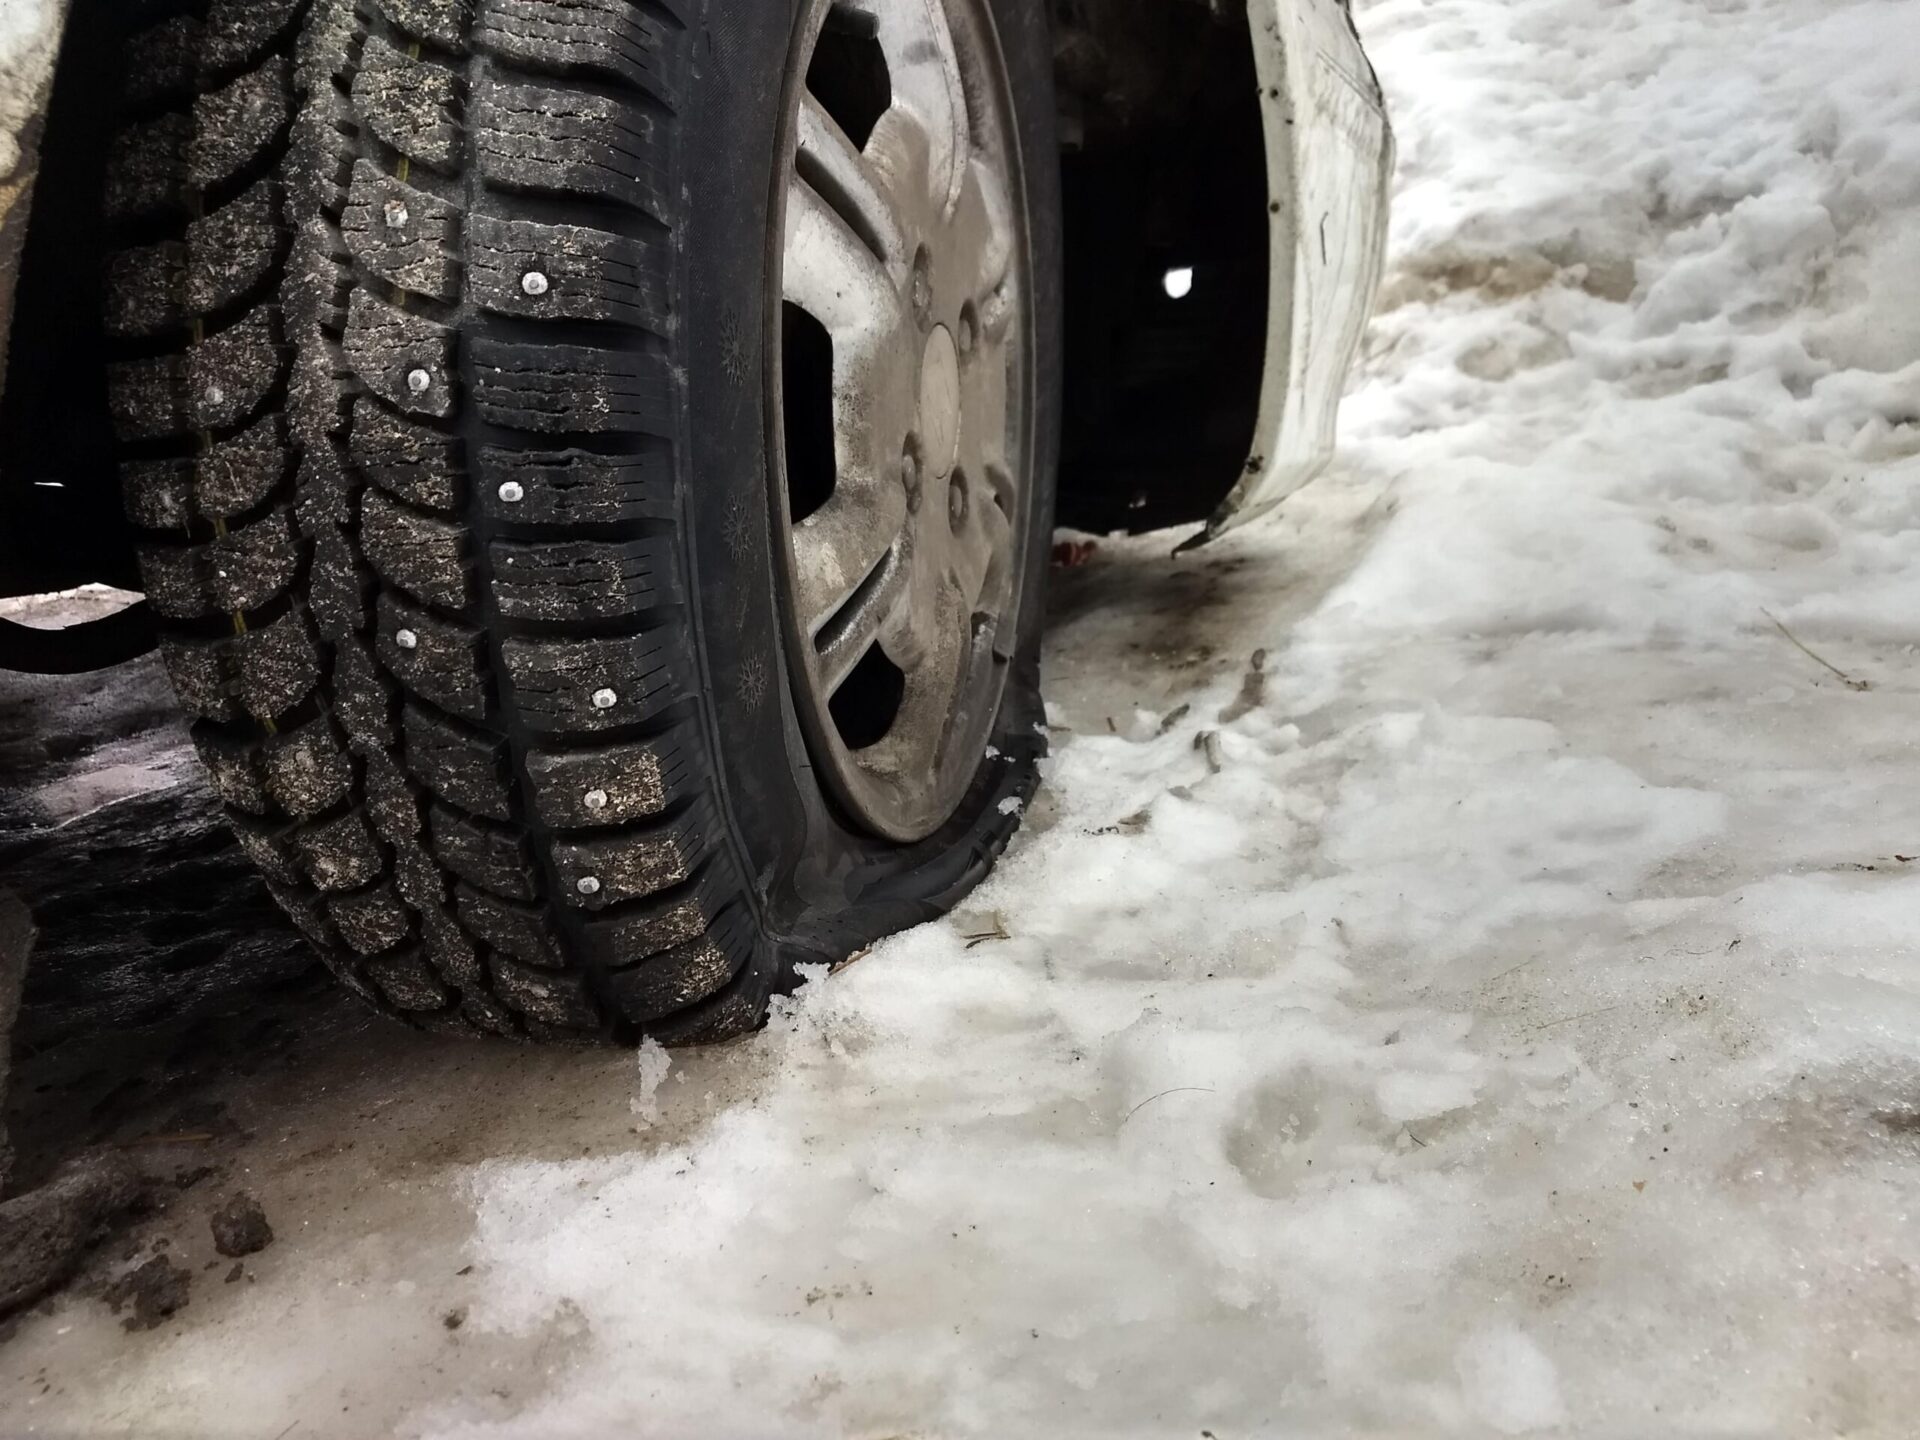 Автоэксперт Жар советовал водителям в РФ снизить давление в шинах автомобиля зимой